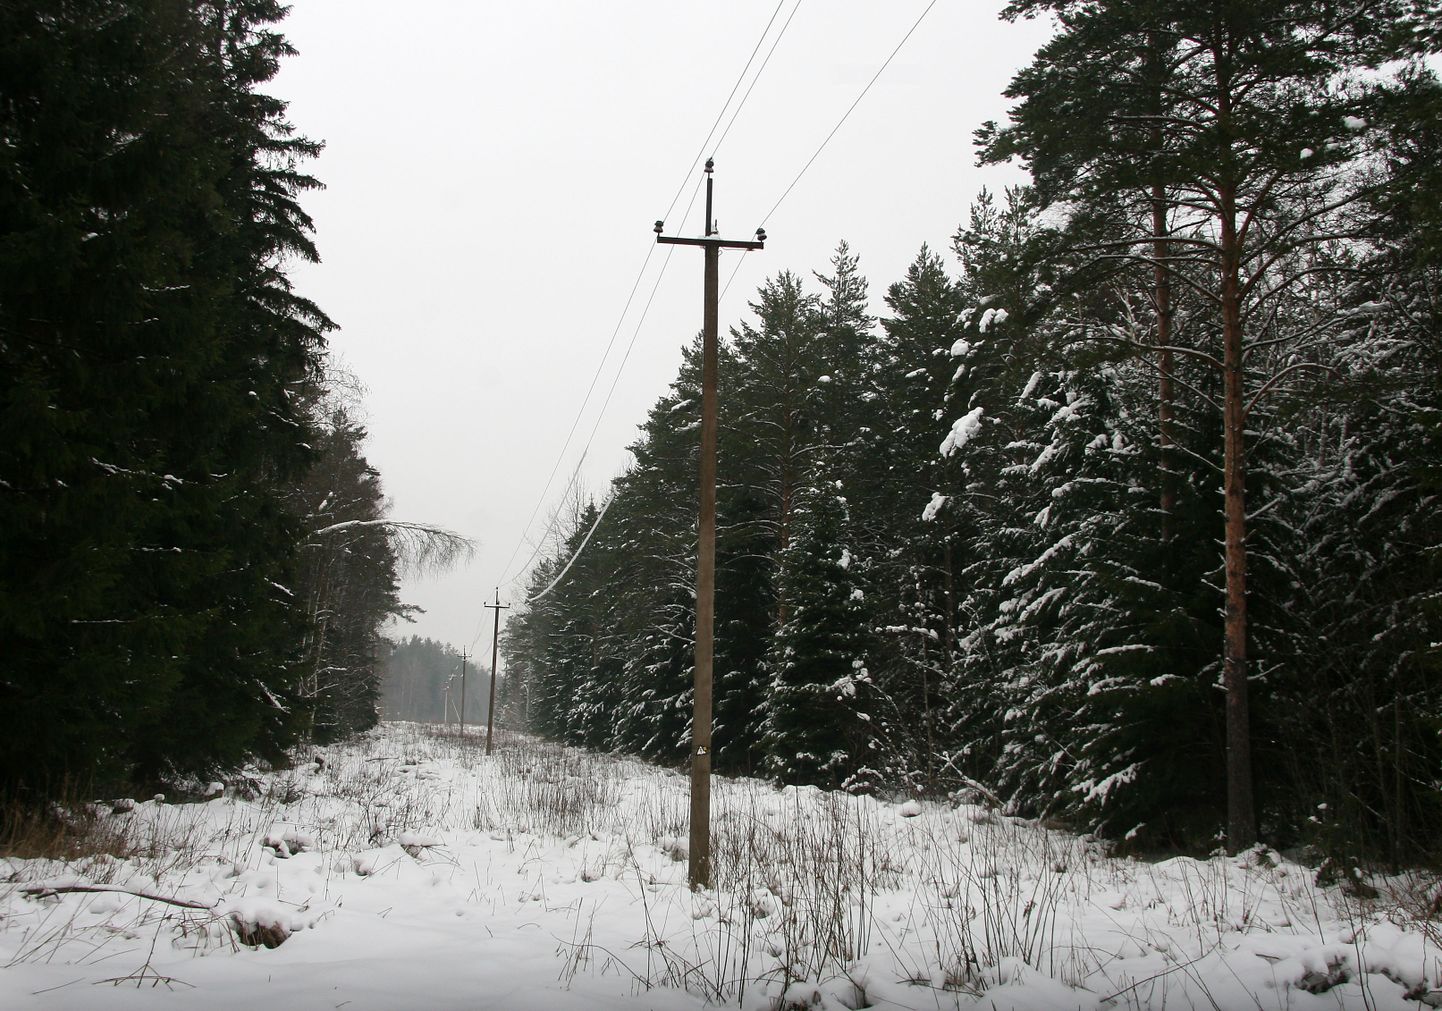 Под тяжестью снега на электролинии падают деревья, растущие также за пределами охранной зоны.